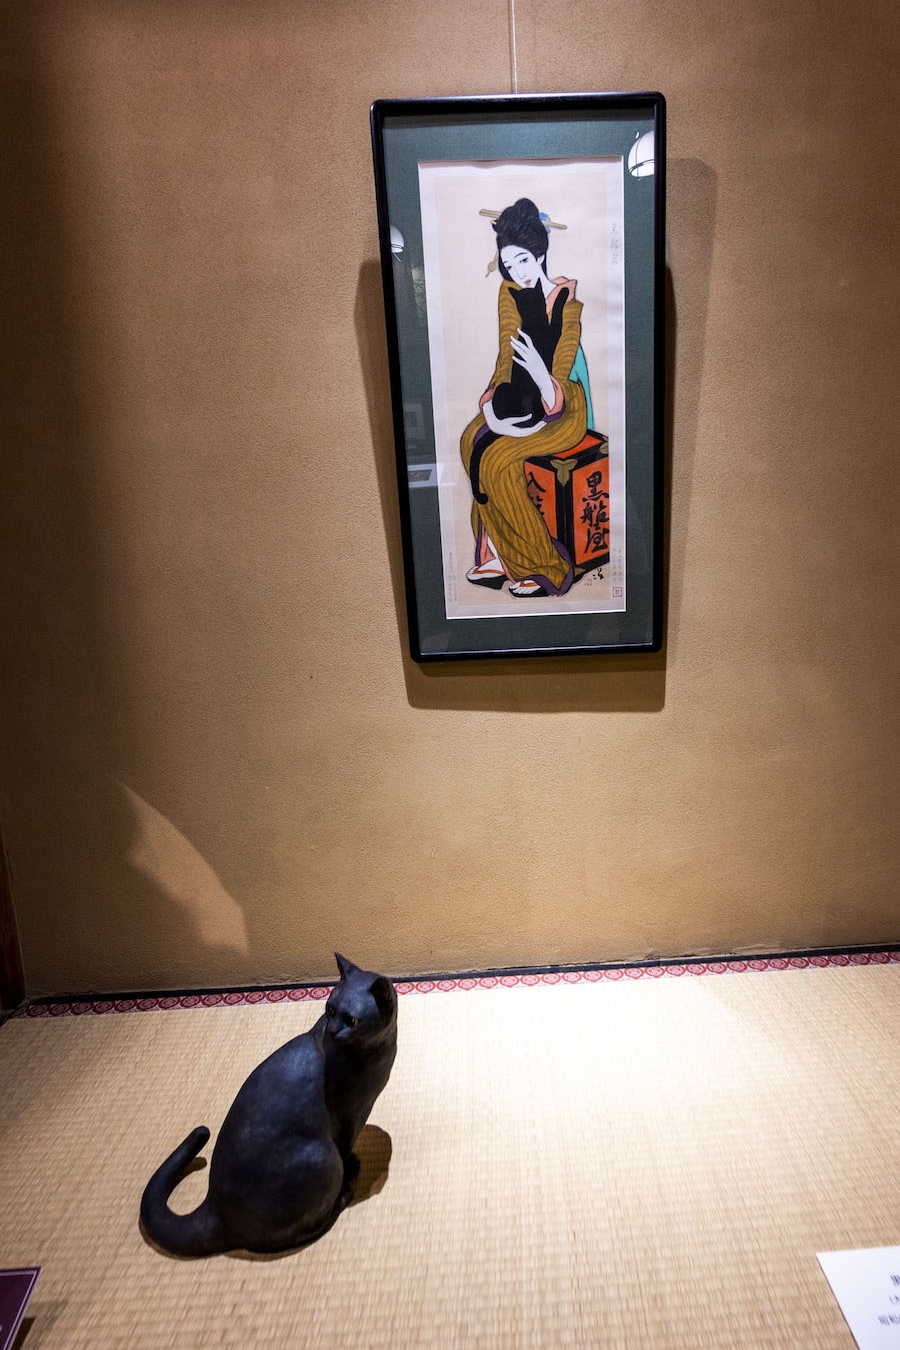 竹久夢二の「黒船屋」と、作品に描かれた猫をイメージした小澤康麿氏による立体作品の共演も　 photo by　ぷらいまり